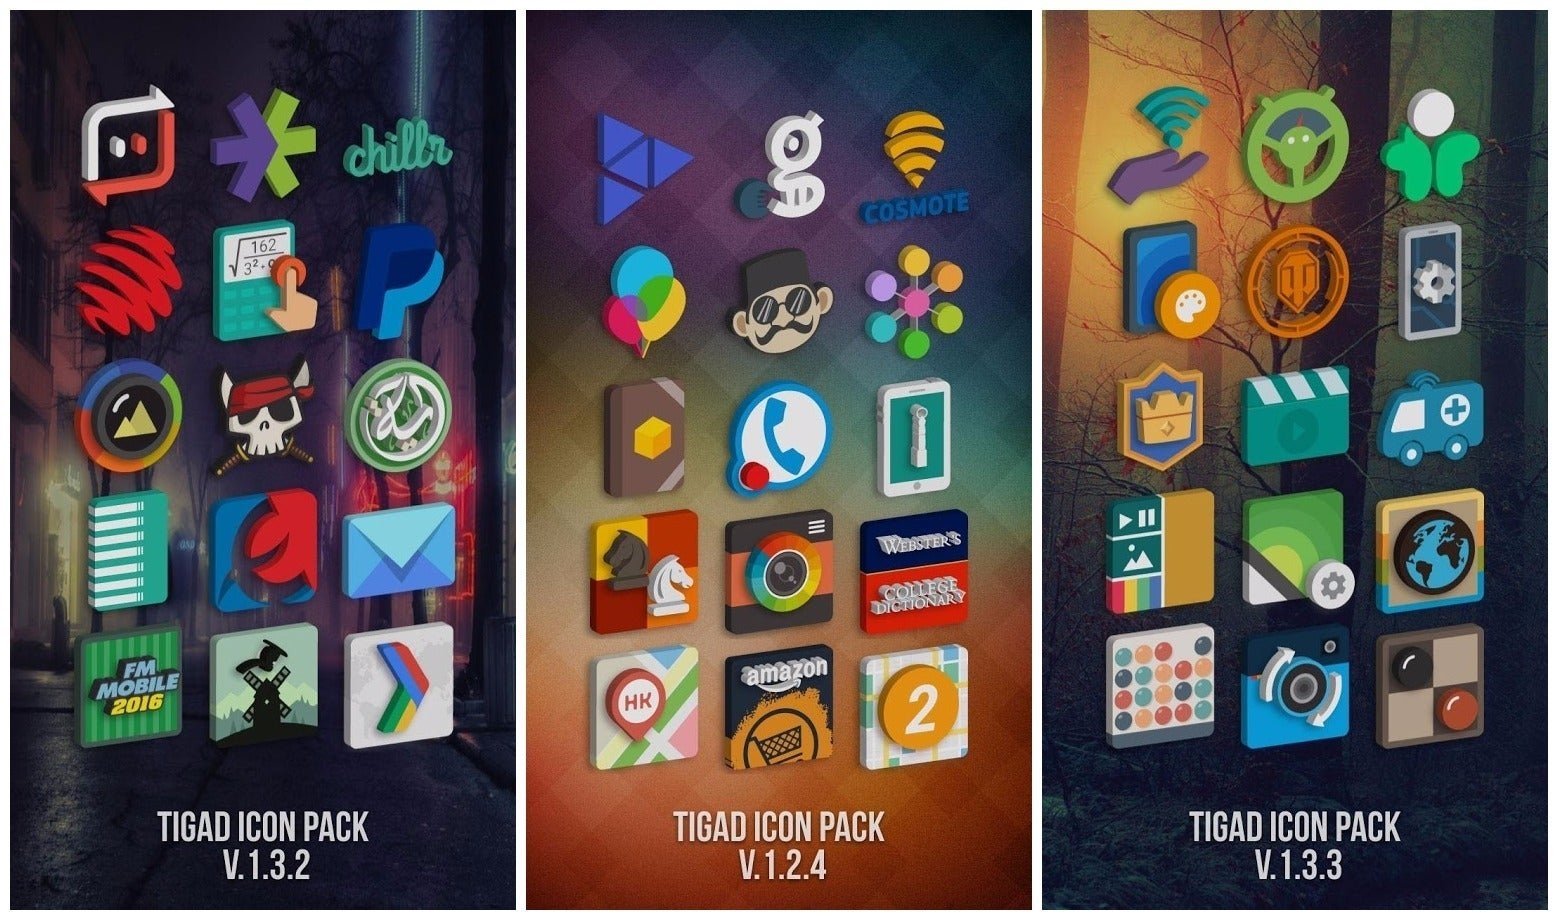 Tigad Icon Pack